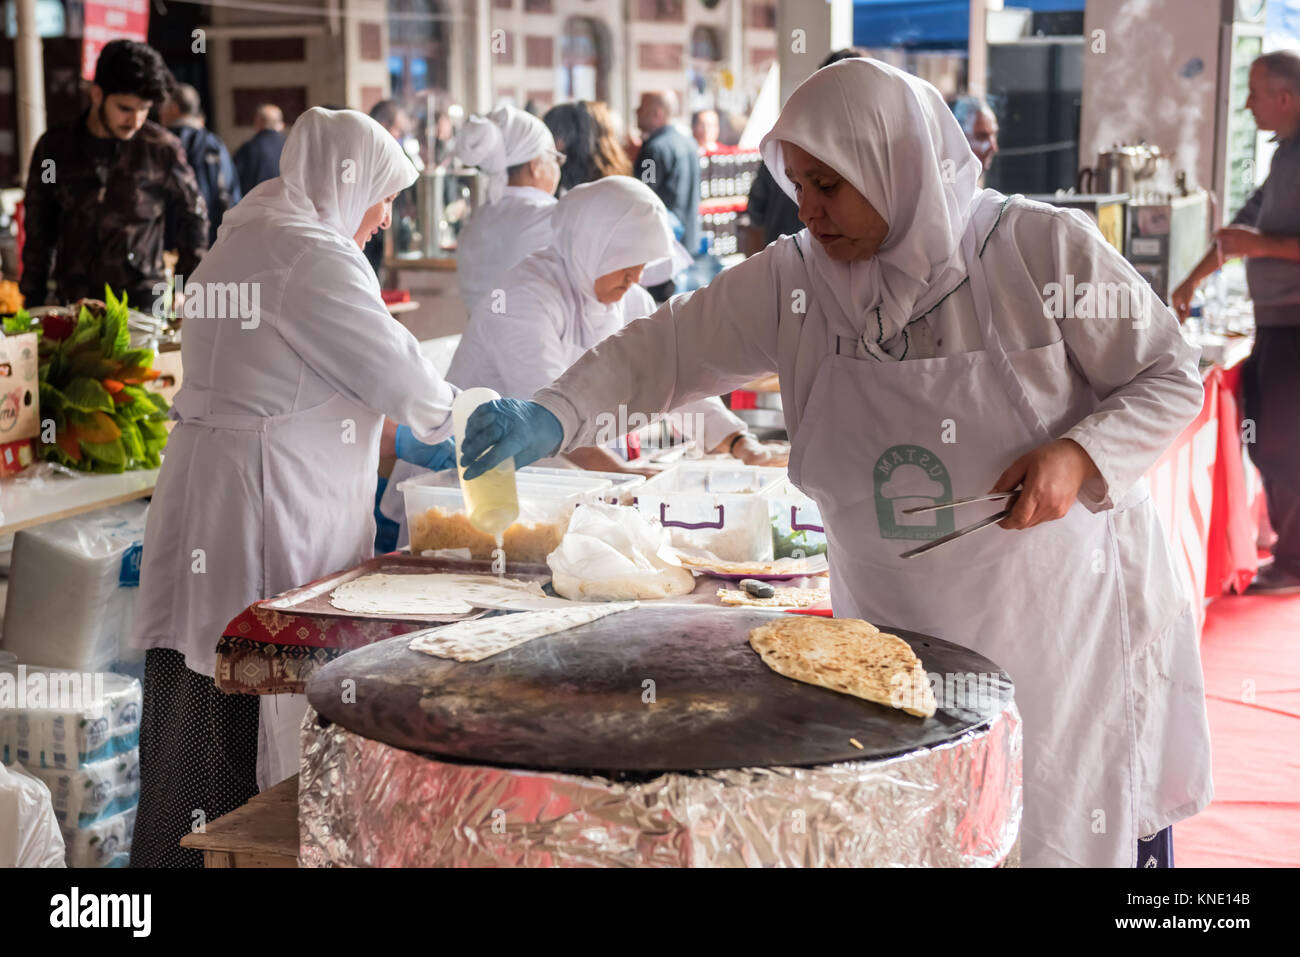 Femme non identifiée la cuisson des aliments traditionnels turcs Gozleme,pâtisseries ou crêpe, sur la cuisinière.Istanbul,Turquie,28 Octobre 2017 Banque D'Images